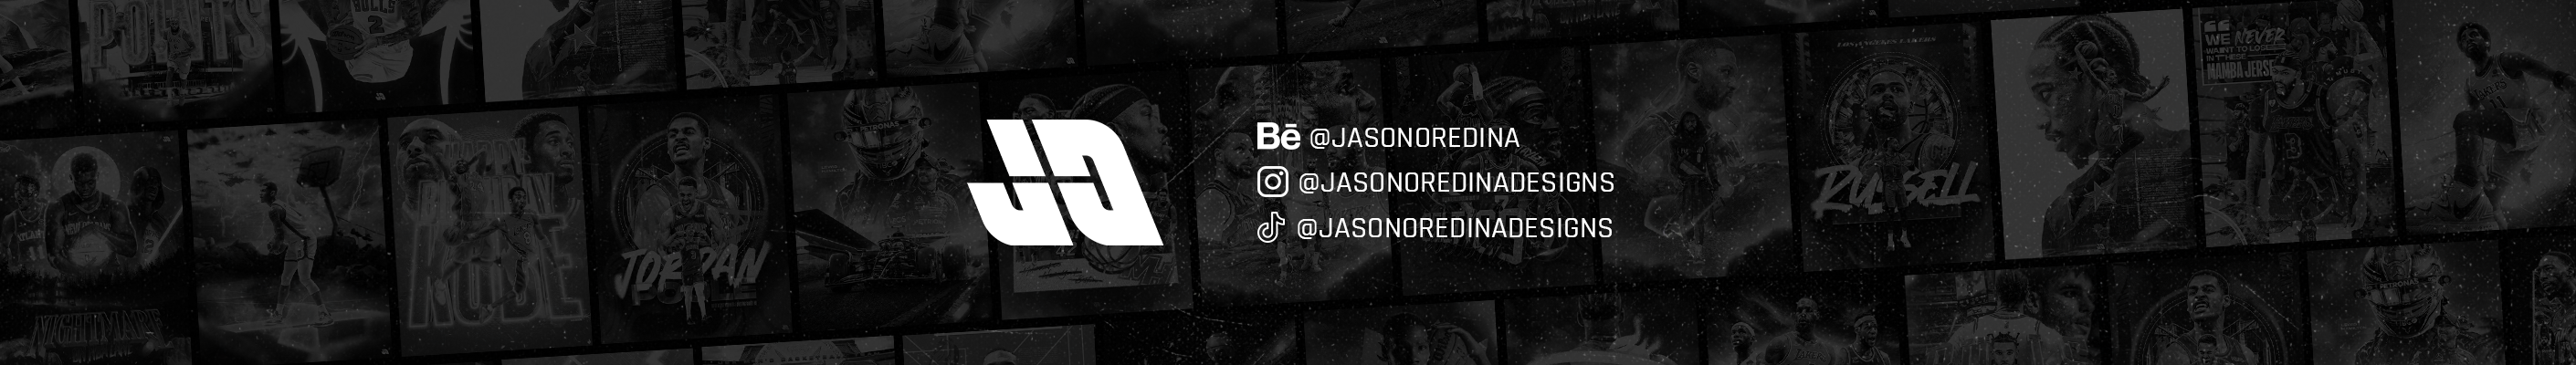 Carl Jason Oredina's profile banner